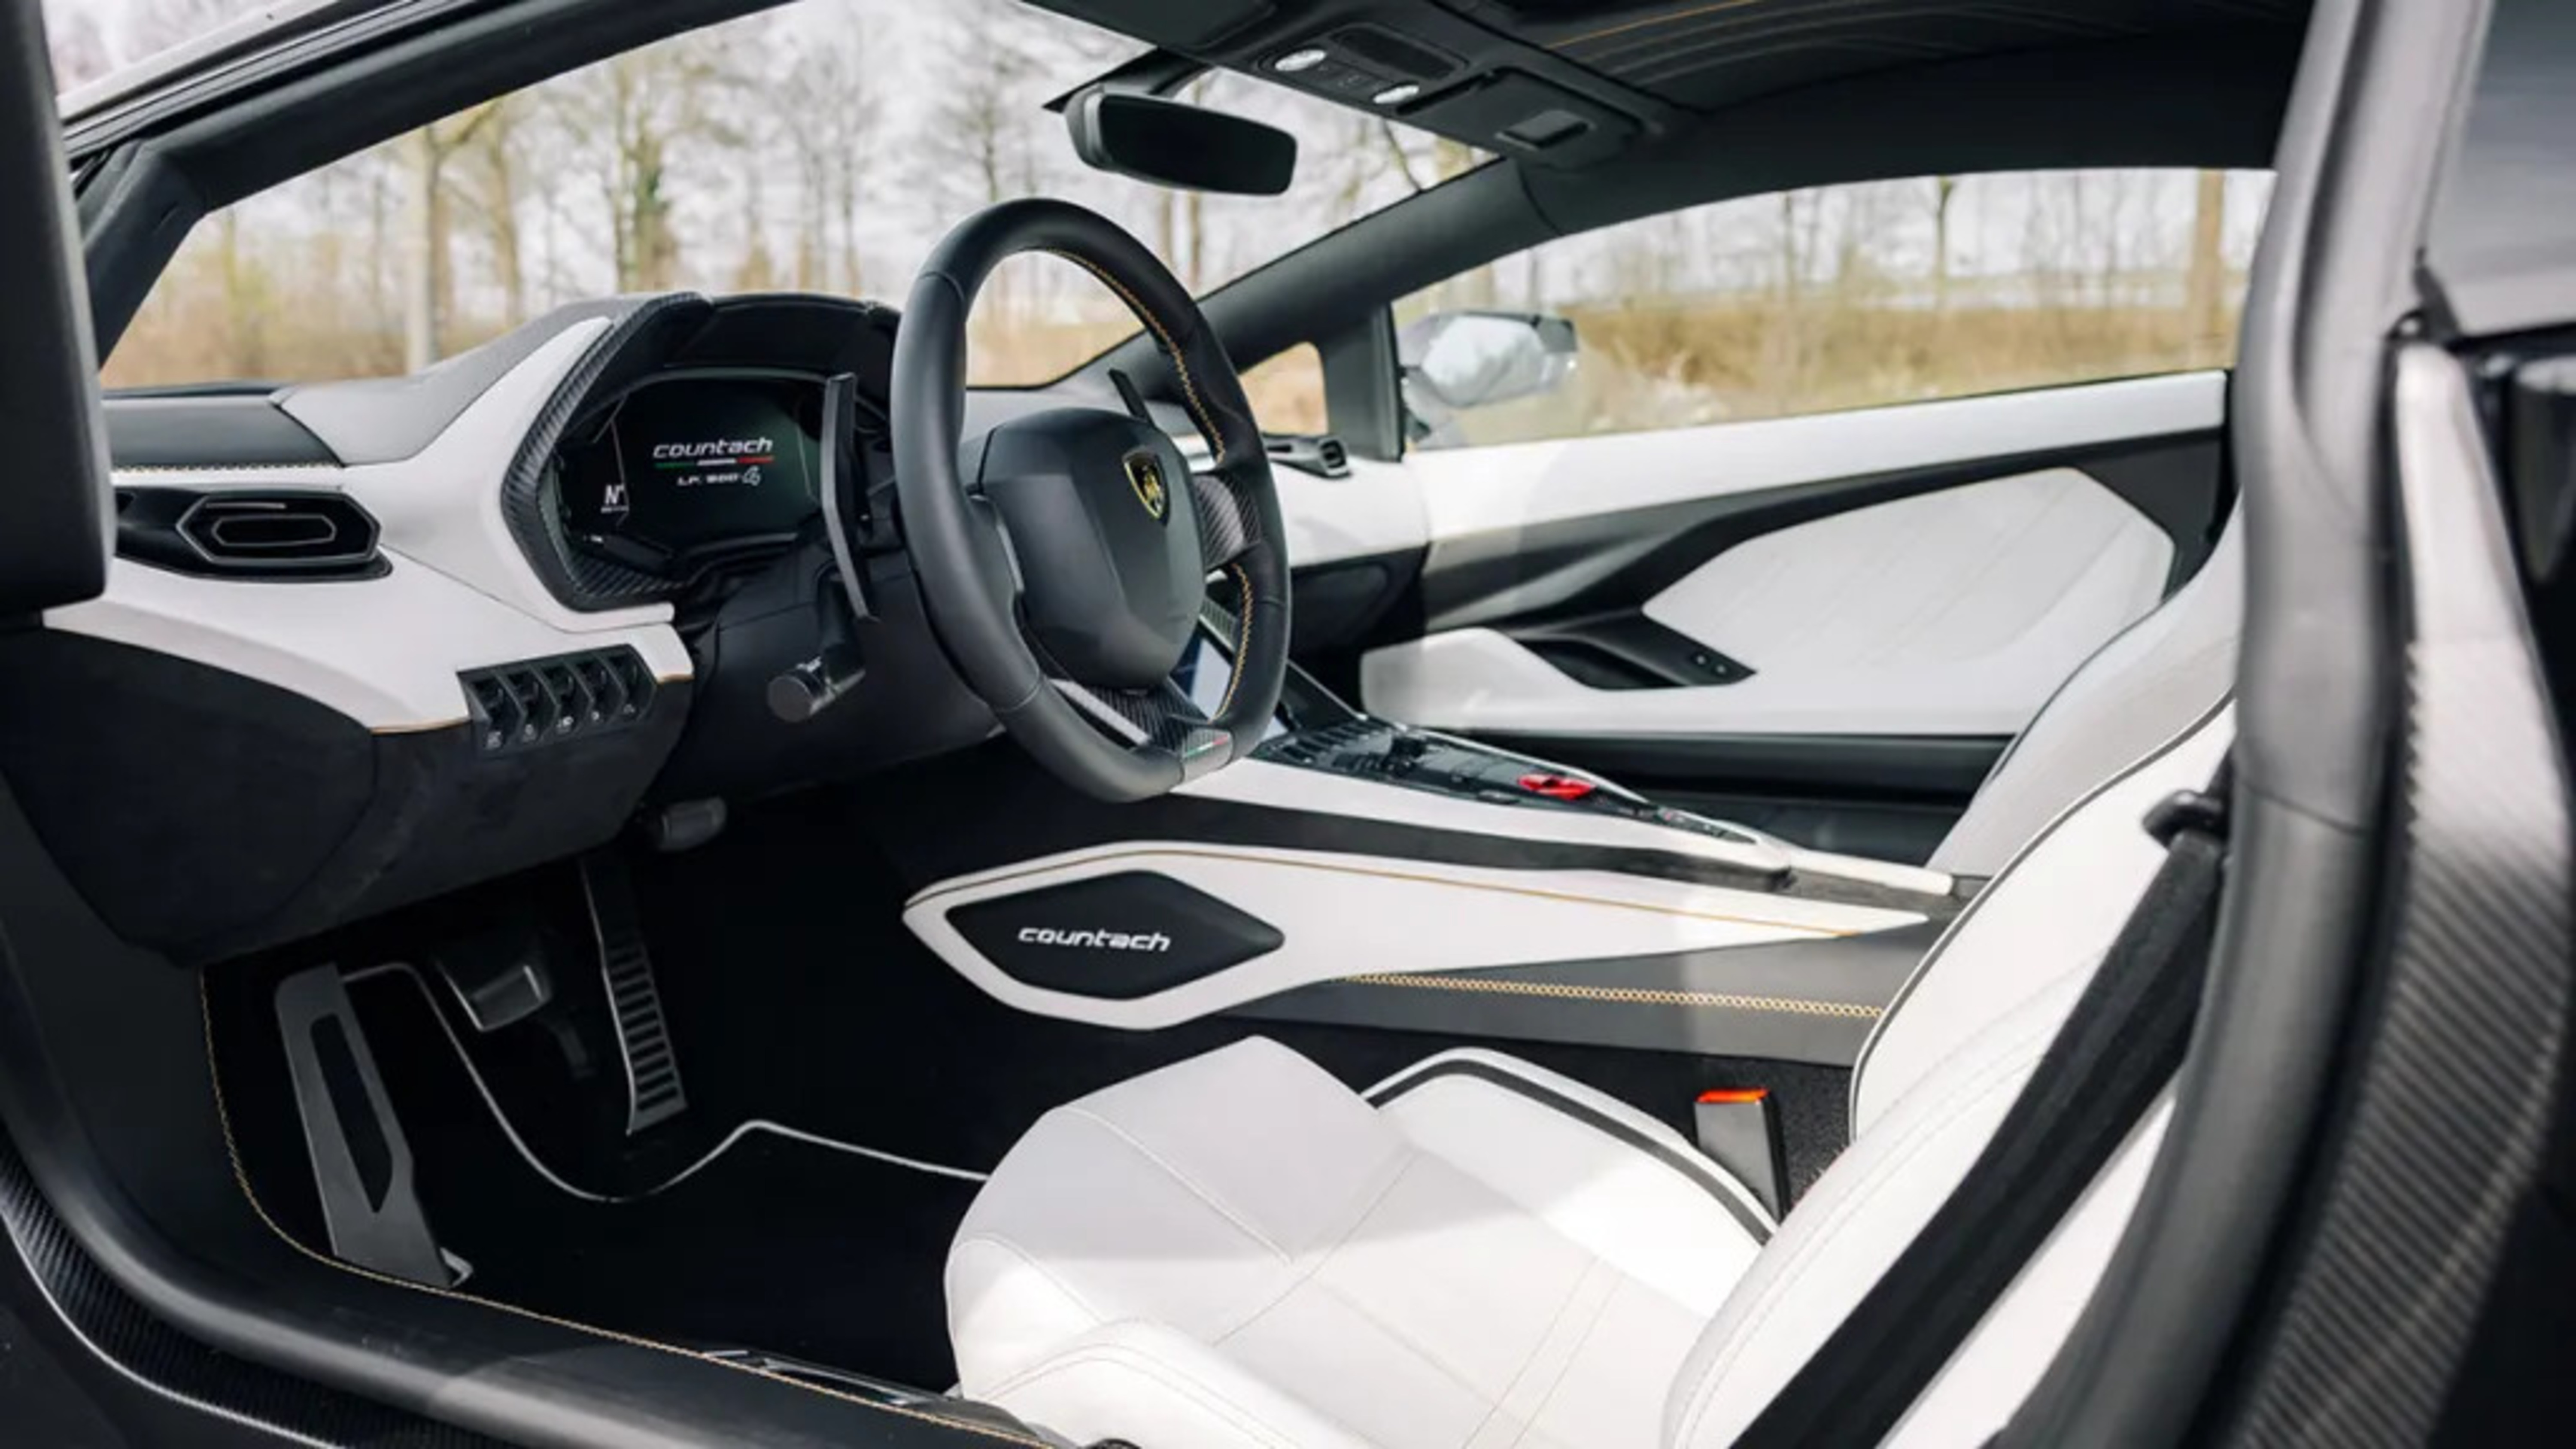 Der Innenraum des Wagens ist in elegantem Weiß und Schwarz gehalten und mit der neuesten Technologie ausgestattet